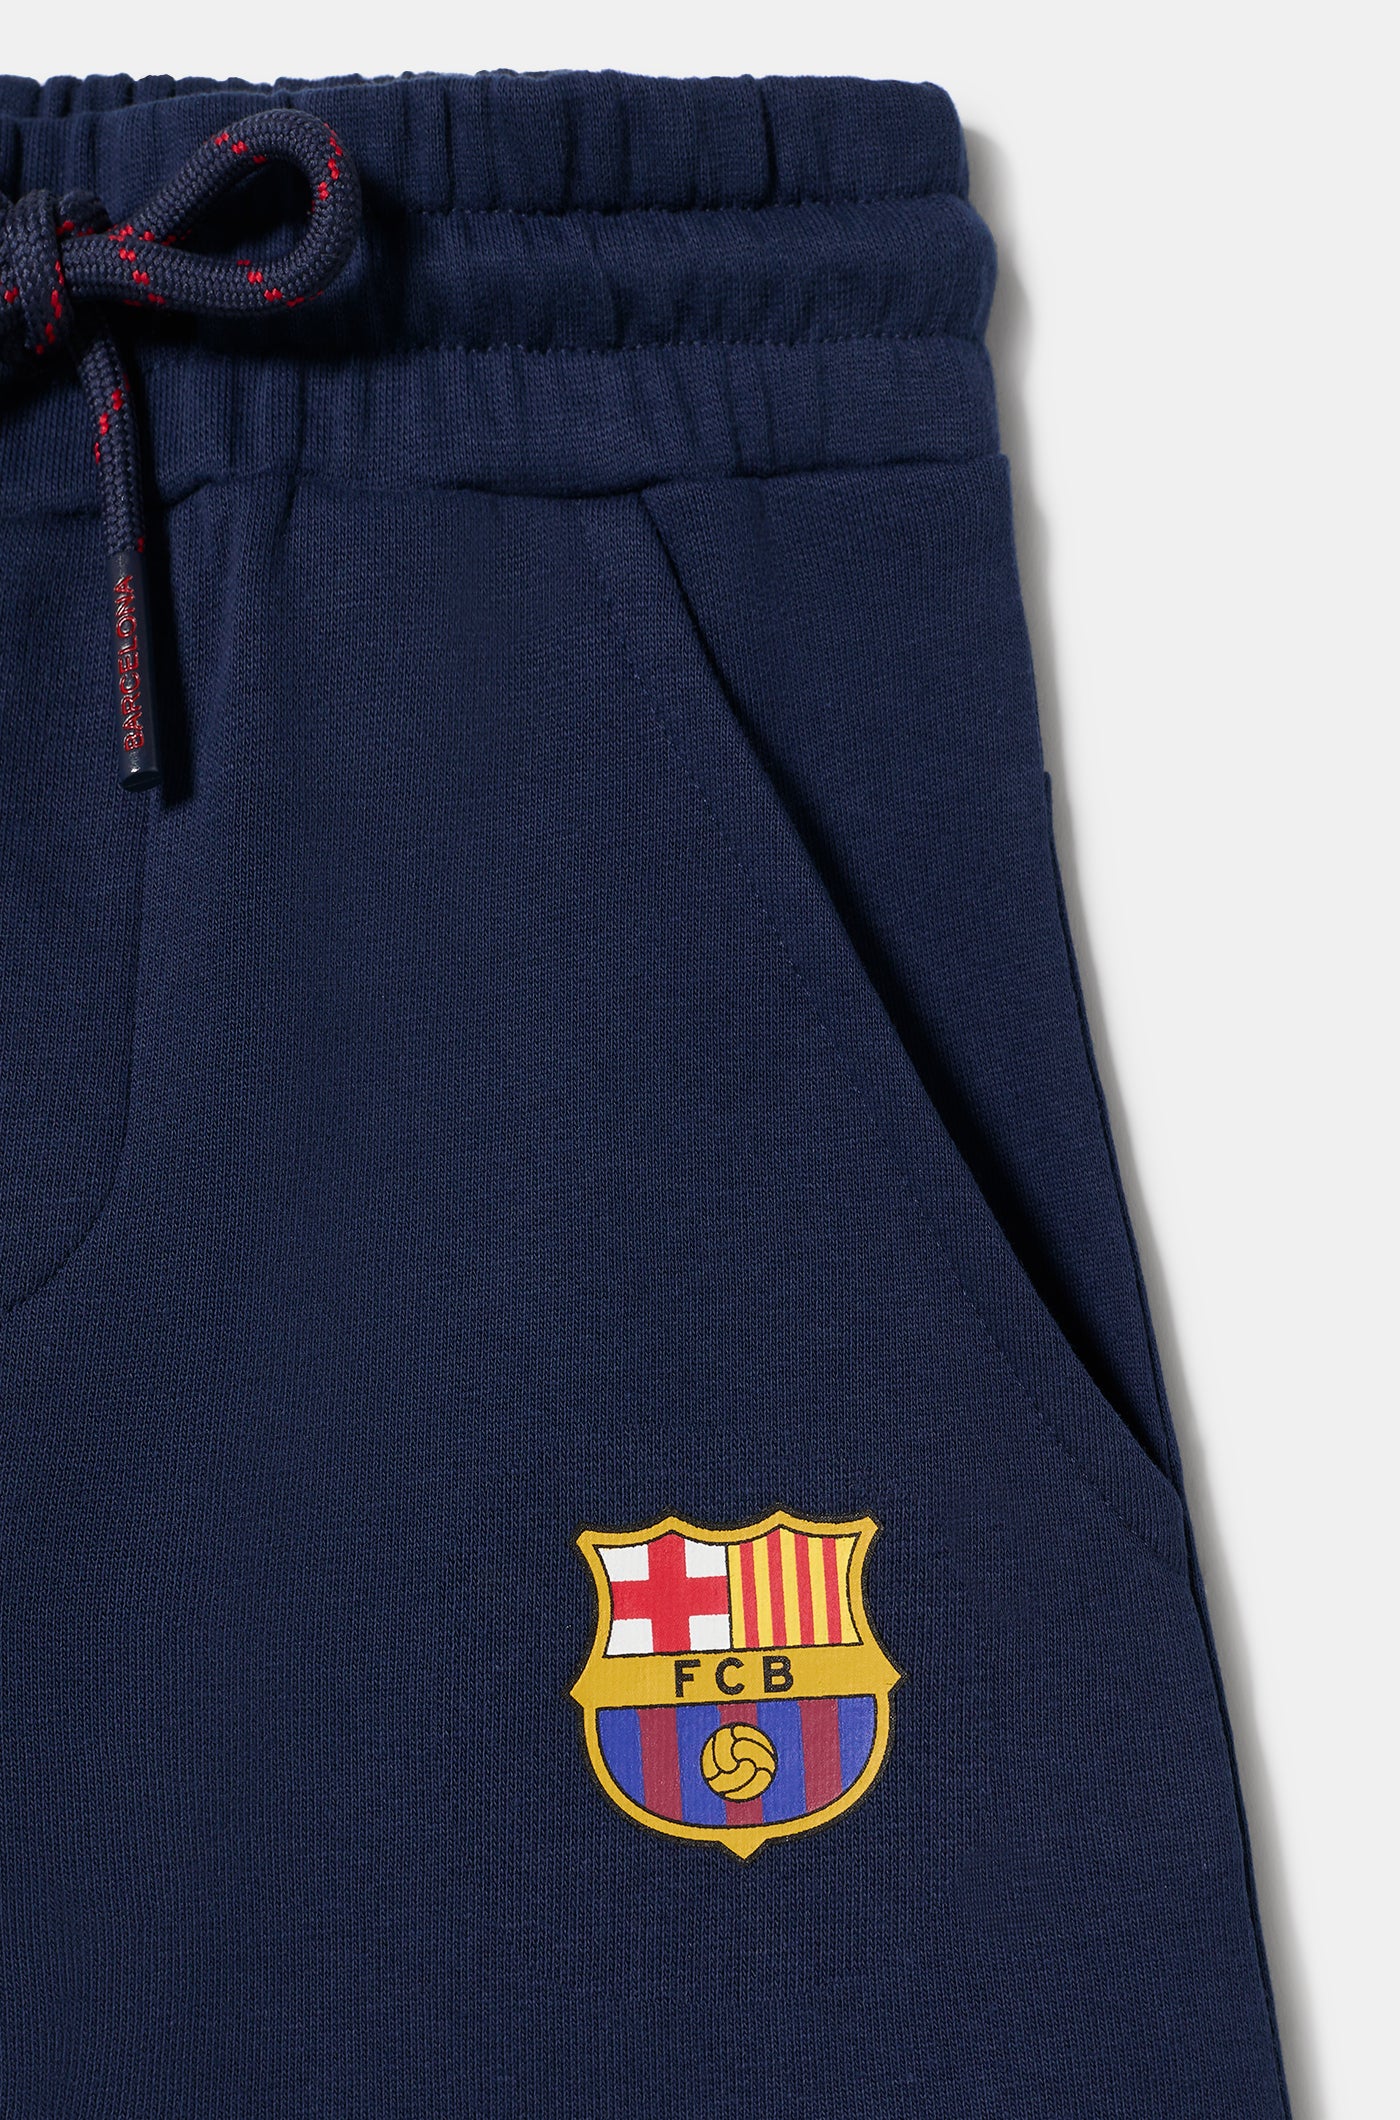 Pantalon de Survêtement Bleu Marine avec Emblème Barça - Junior